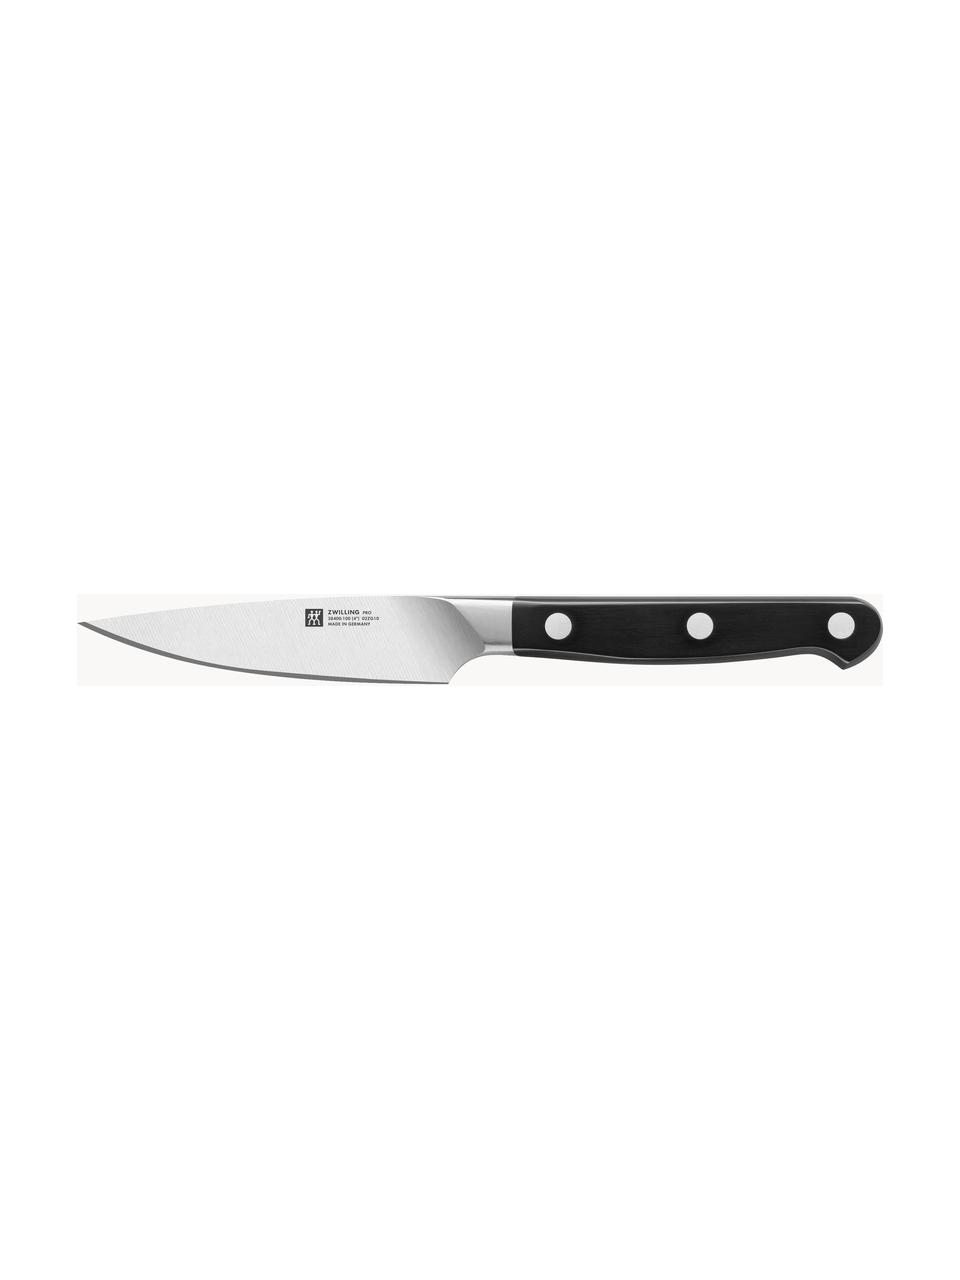 Selbstschärfender Messerblock Pro mit 5 Messern und 1 Schere, Messer: Edelstahl, Griff: Kunststoff, Braun, Set mit verschiedenen Größen